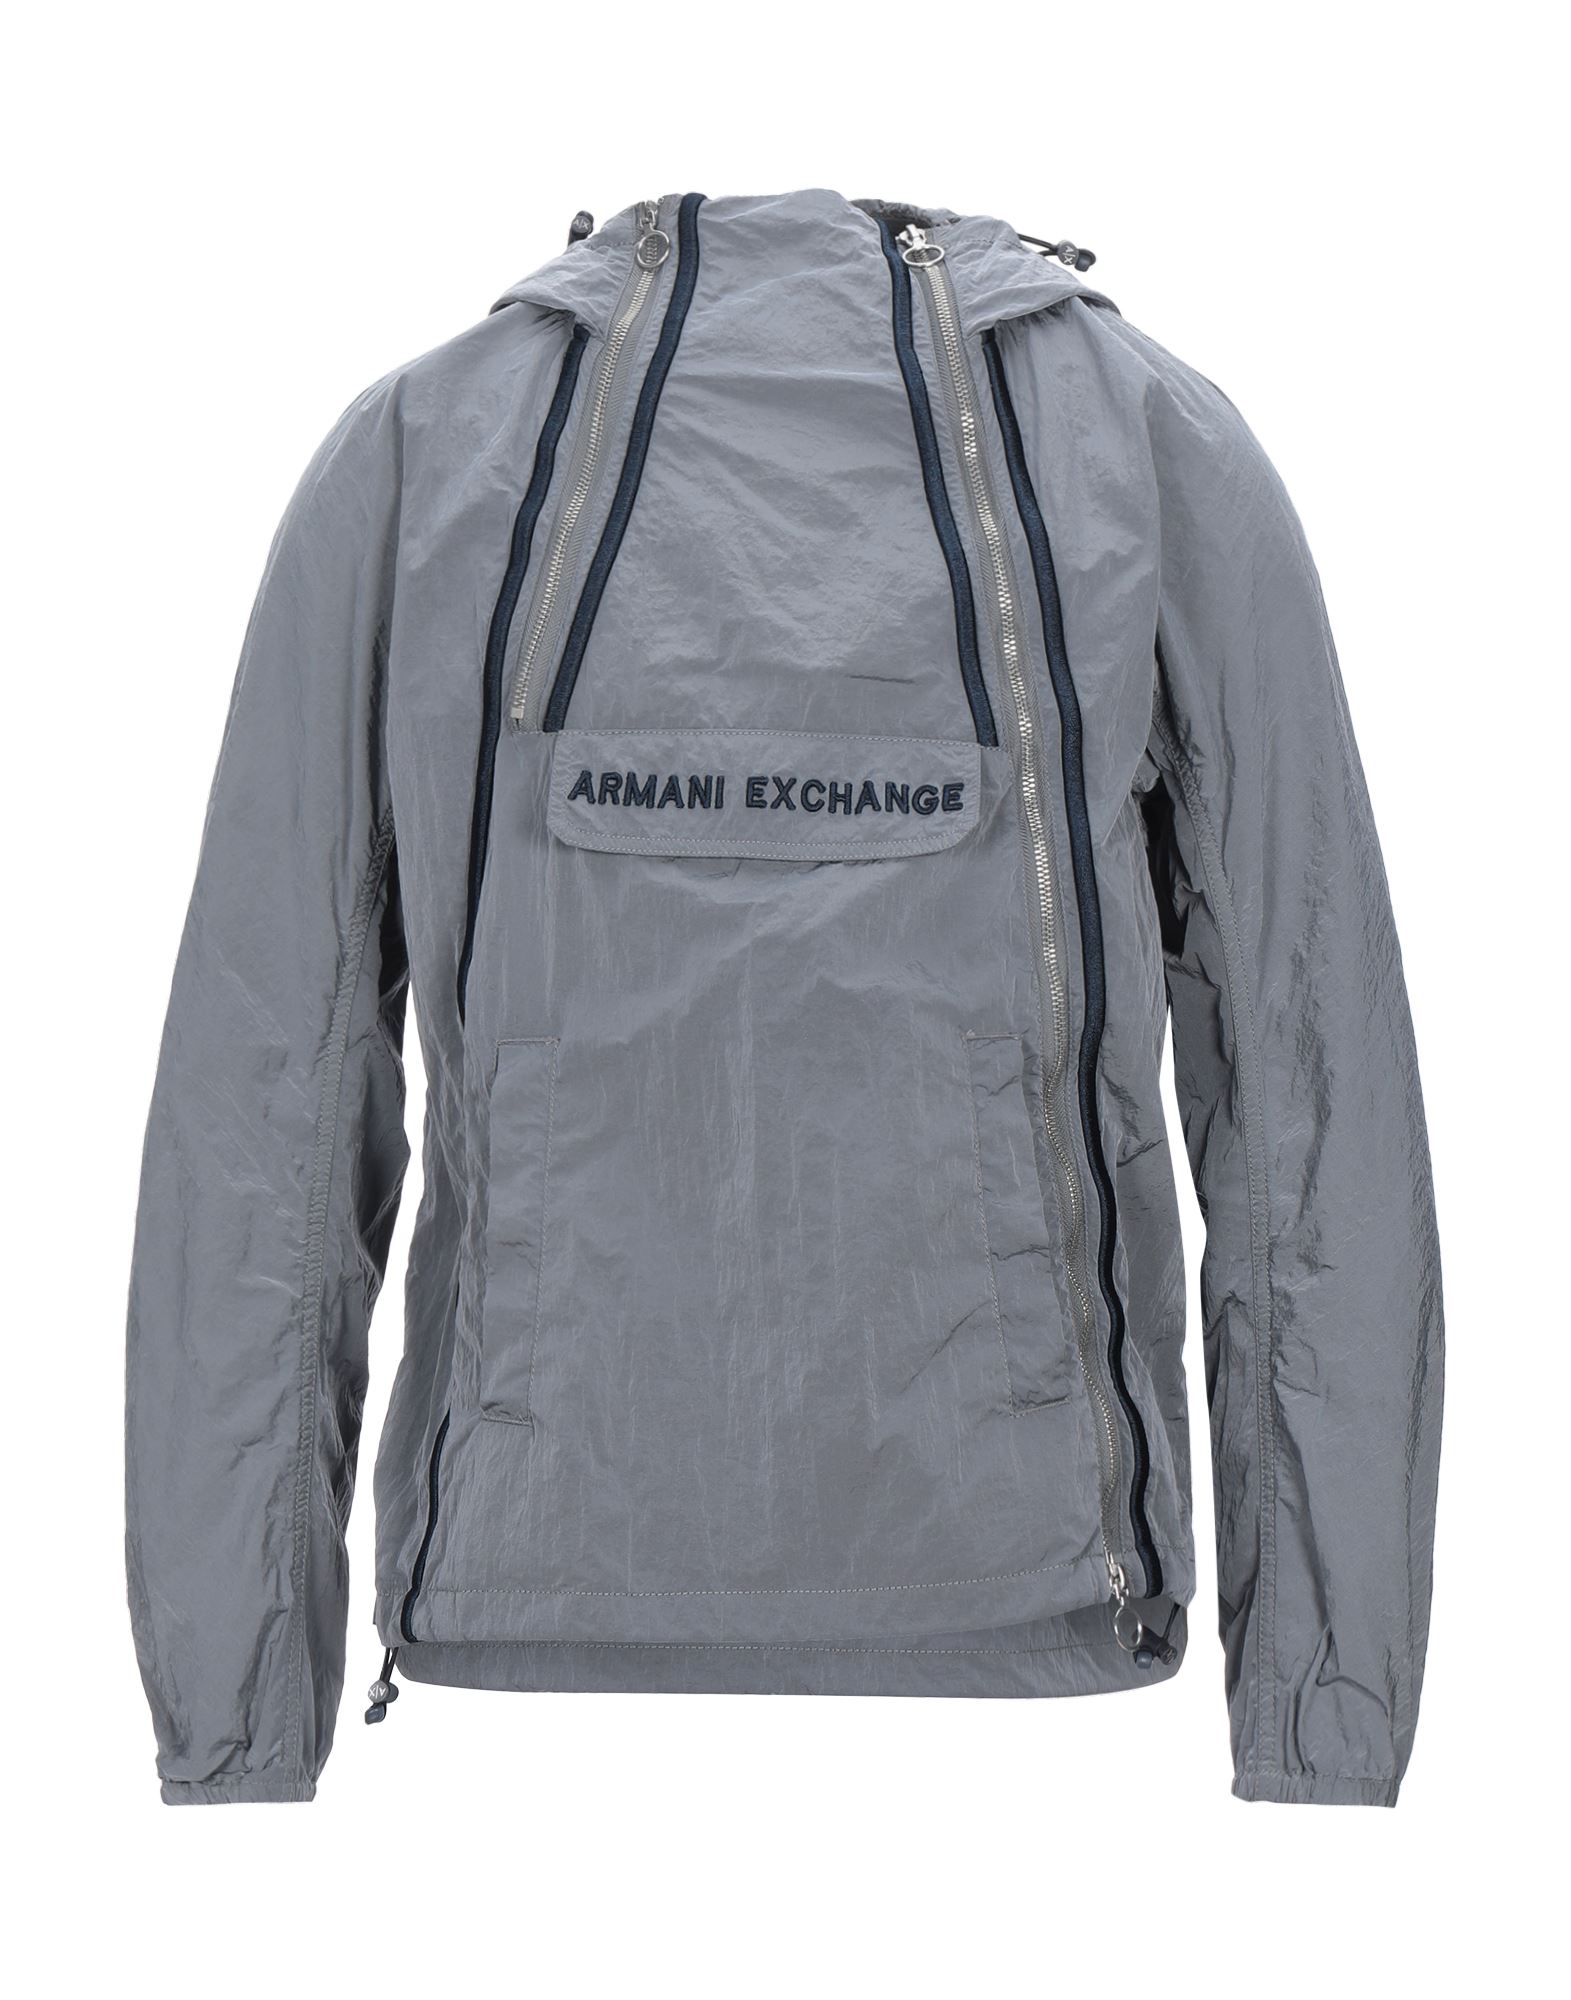 アルマーニ エクスチェンジ(ARMANI EXCHANGE) メンズジャケット 